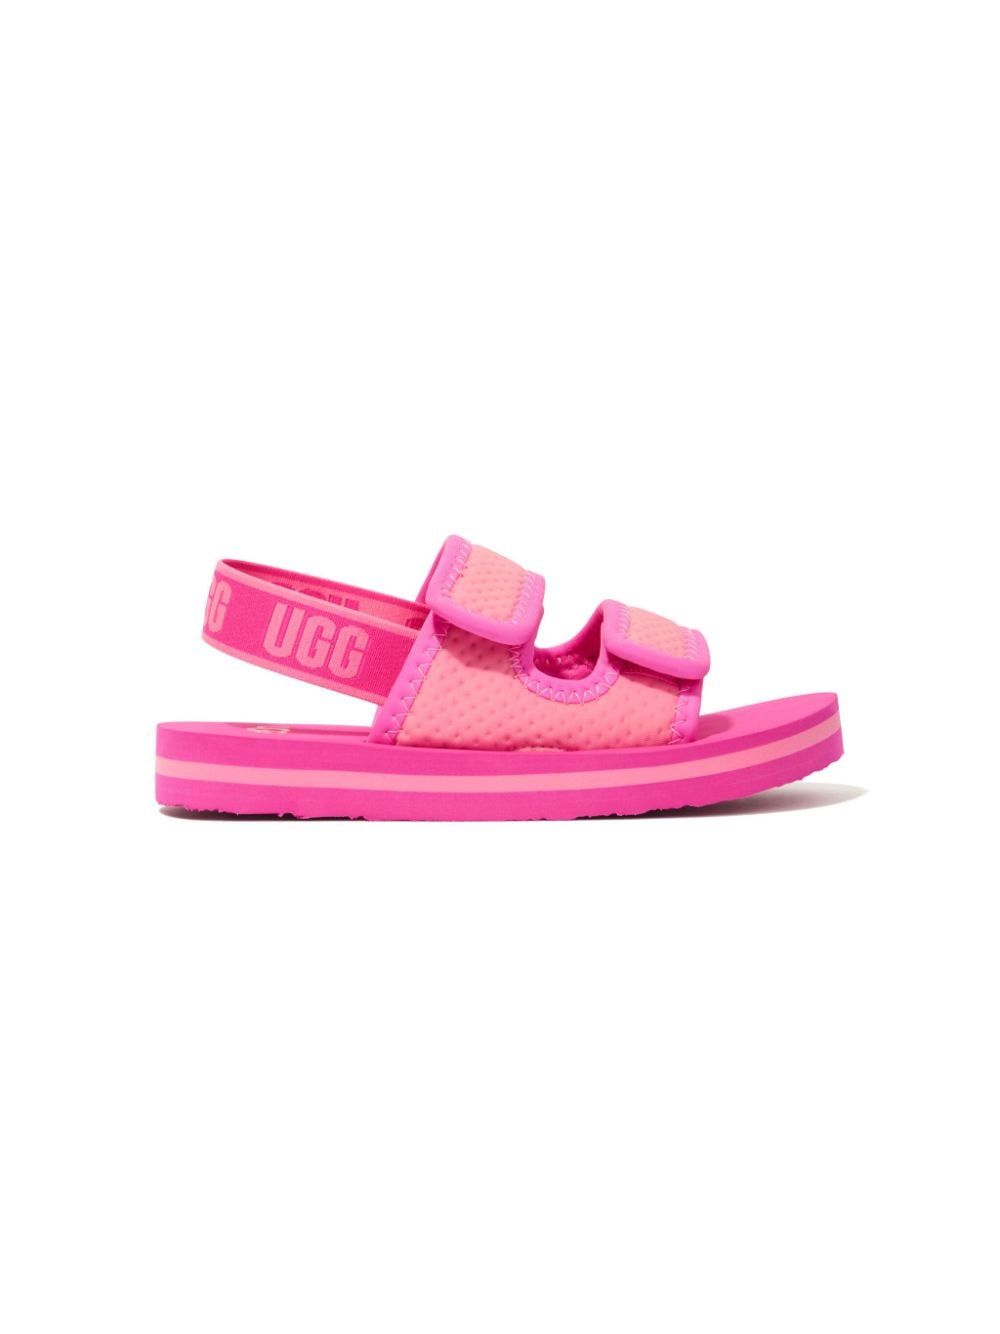 UGG Kids Lennon slingback sandals - Pink von UGG Kids